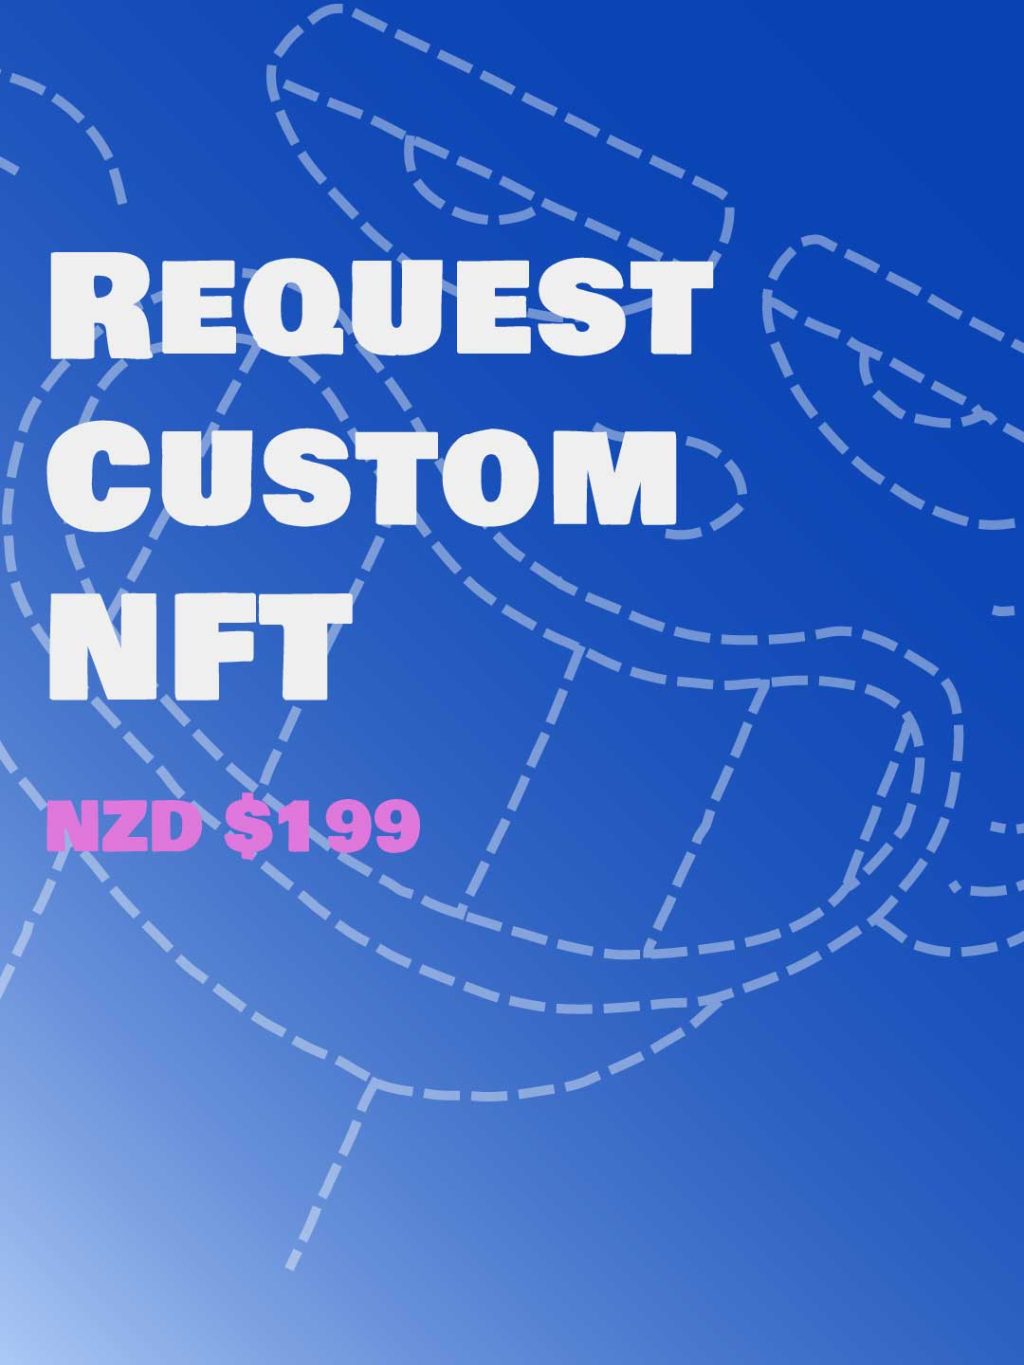 Custom NFT request